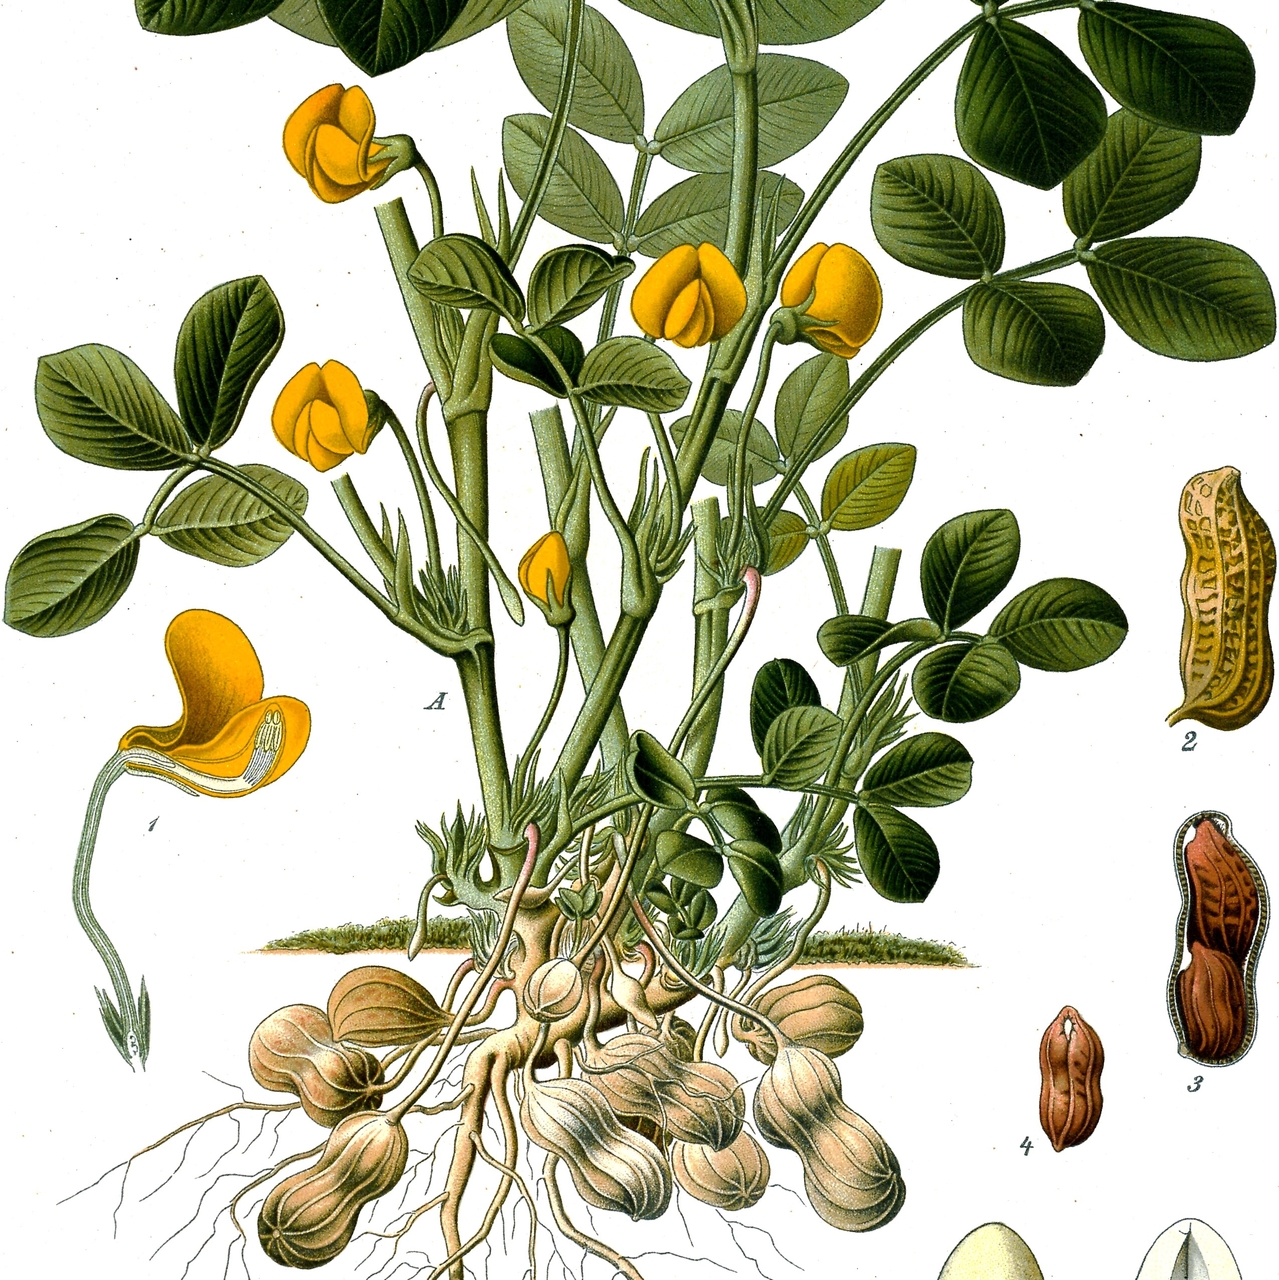 j557 peanut seeds semi semilla Arachis hypogaea 10 seeds of toblerone peanuts 